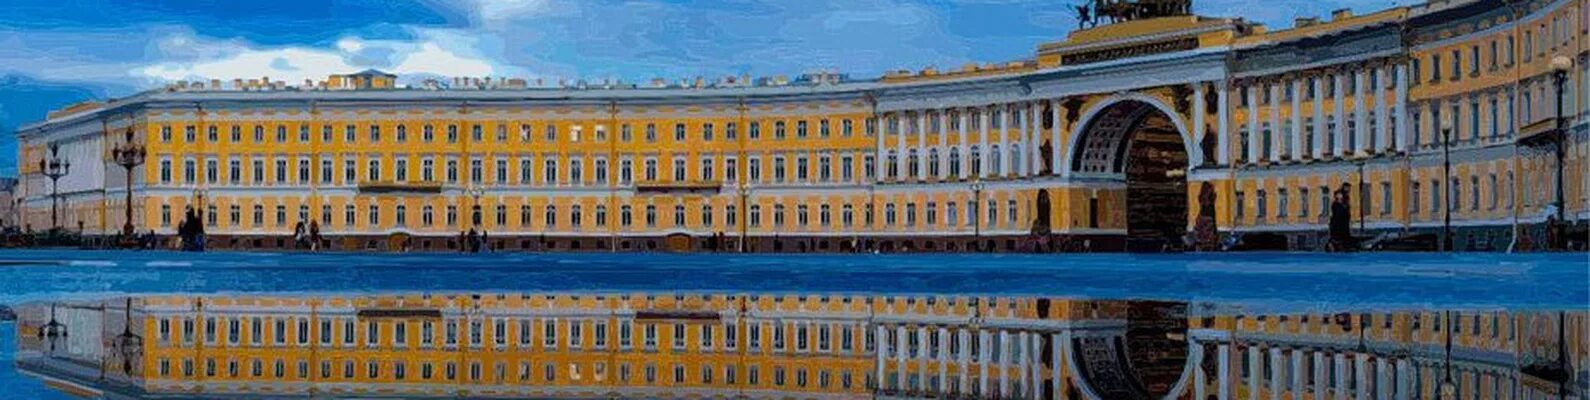 Спб нулевой. Питер панорама. Петербург нулевых.